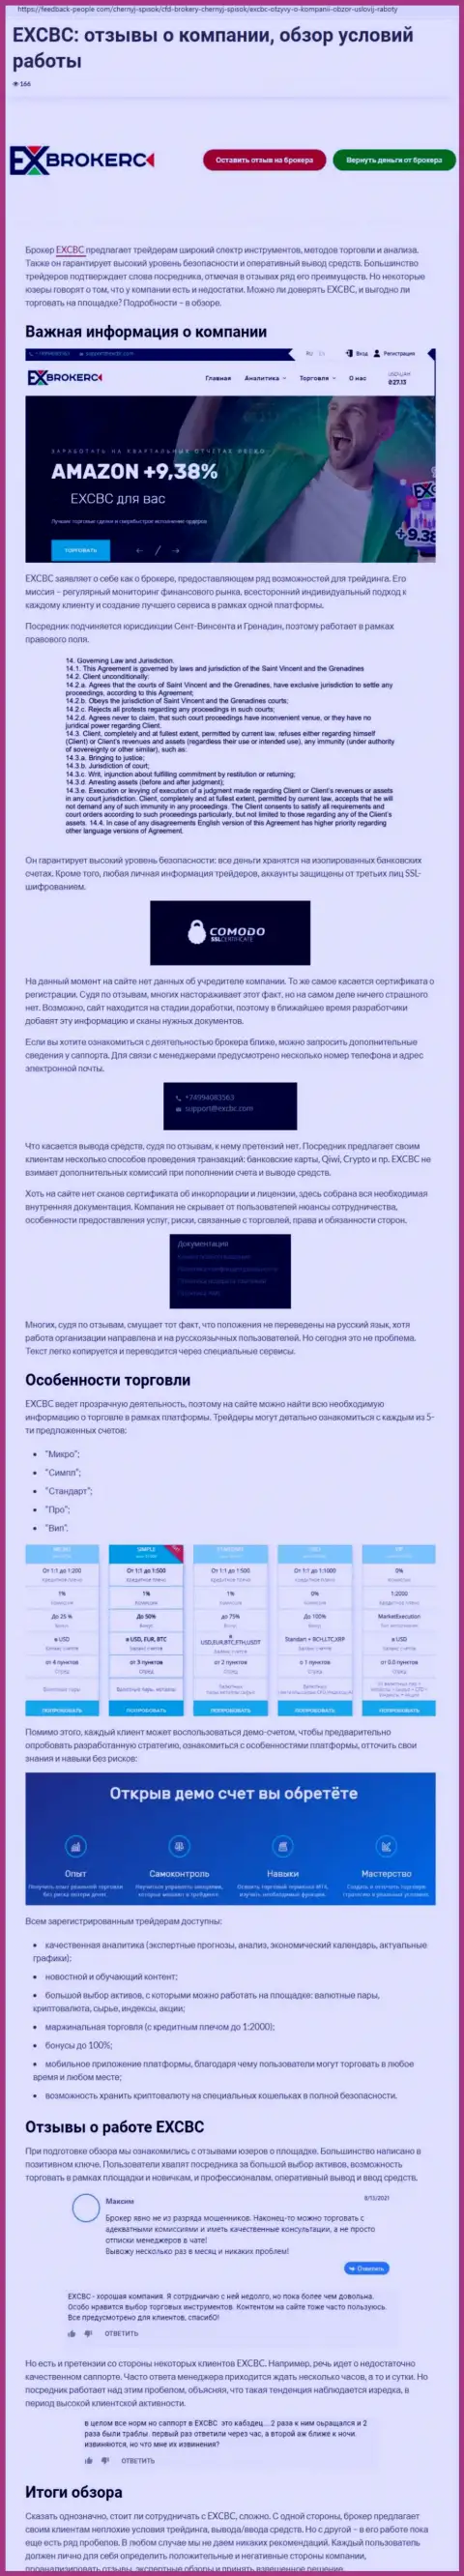 Материал о ФОРЕКС организации EXCBC Сom на сайте ФидБек Пеопле Ком